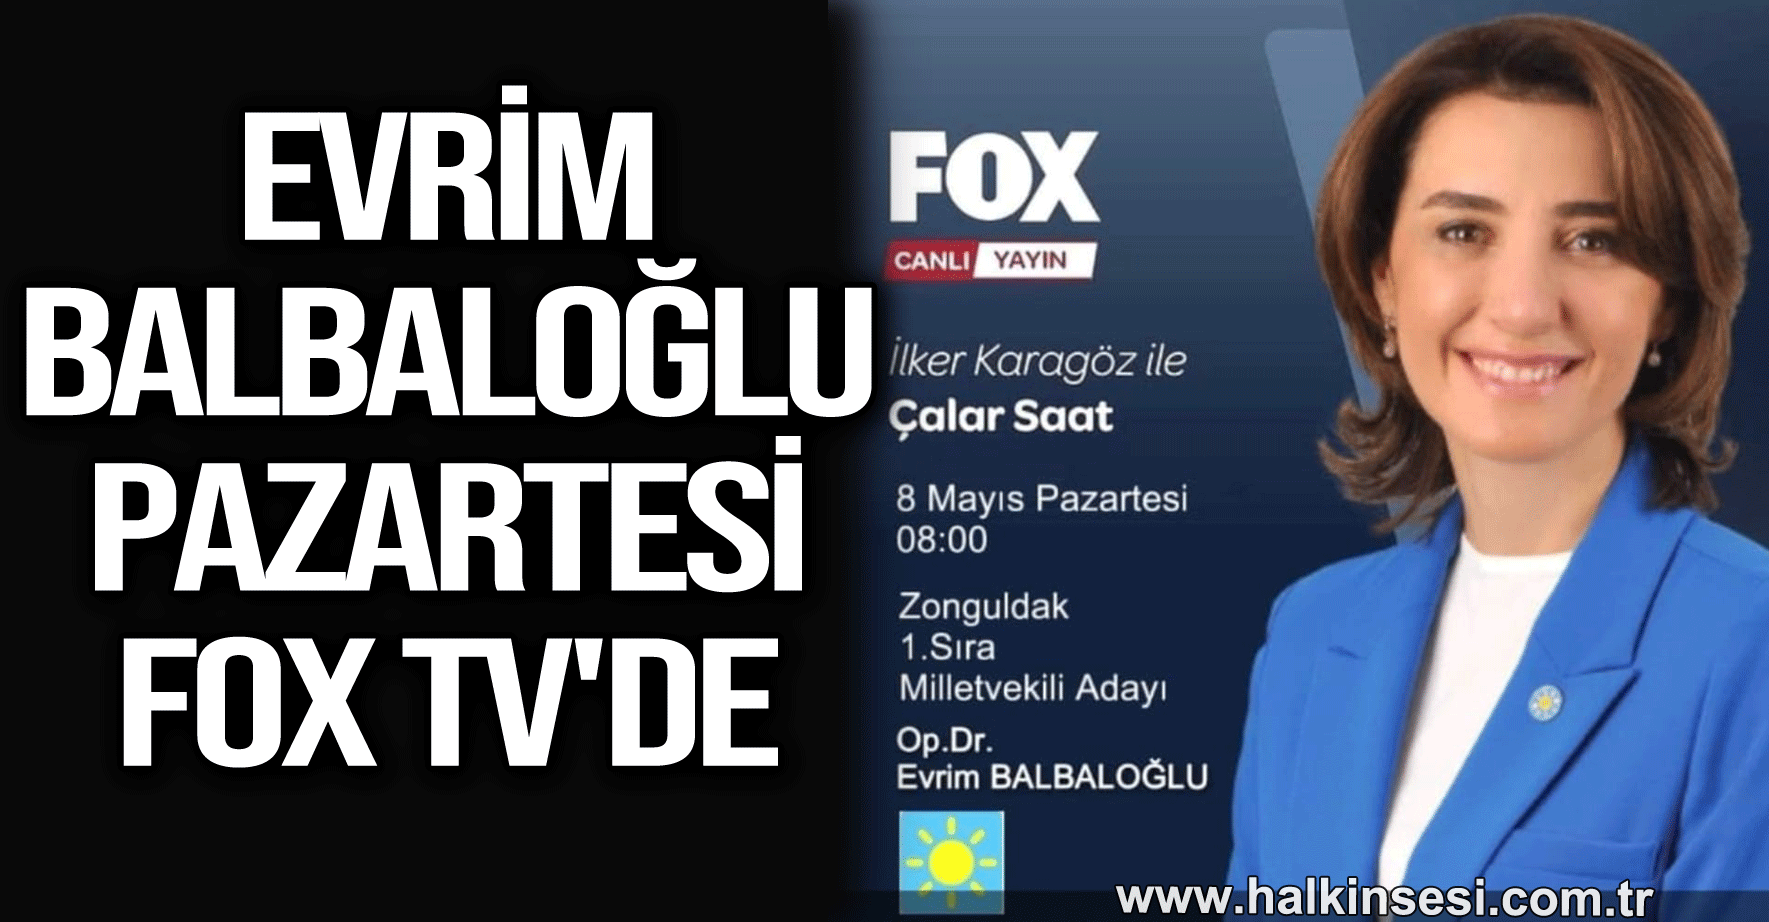 EVRİM BALBALOĞLU PAZARTESİ FOX TV'DE